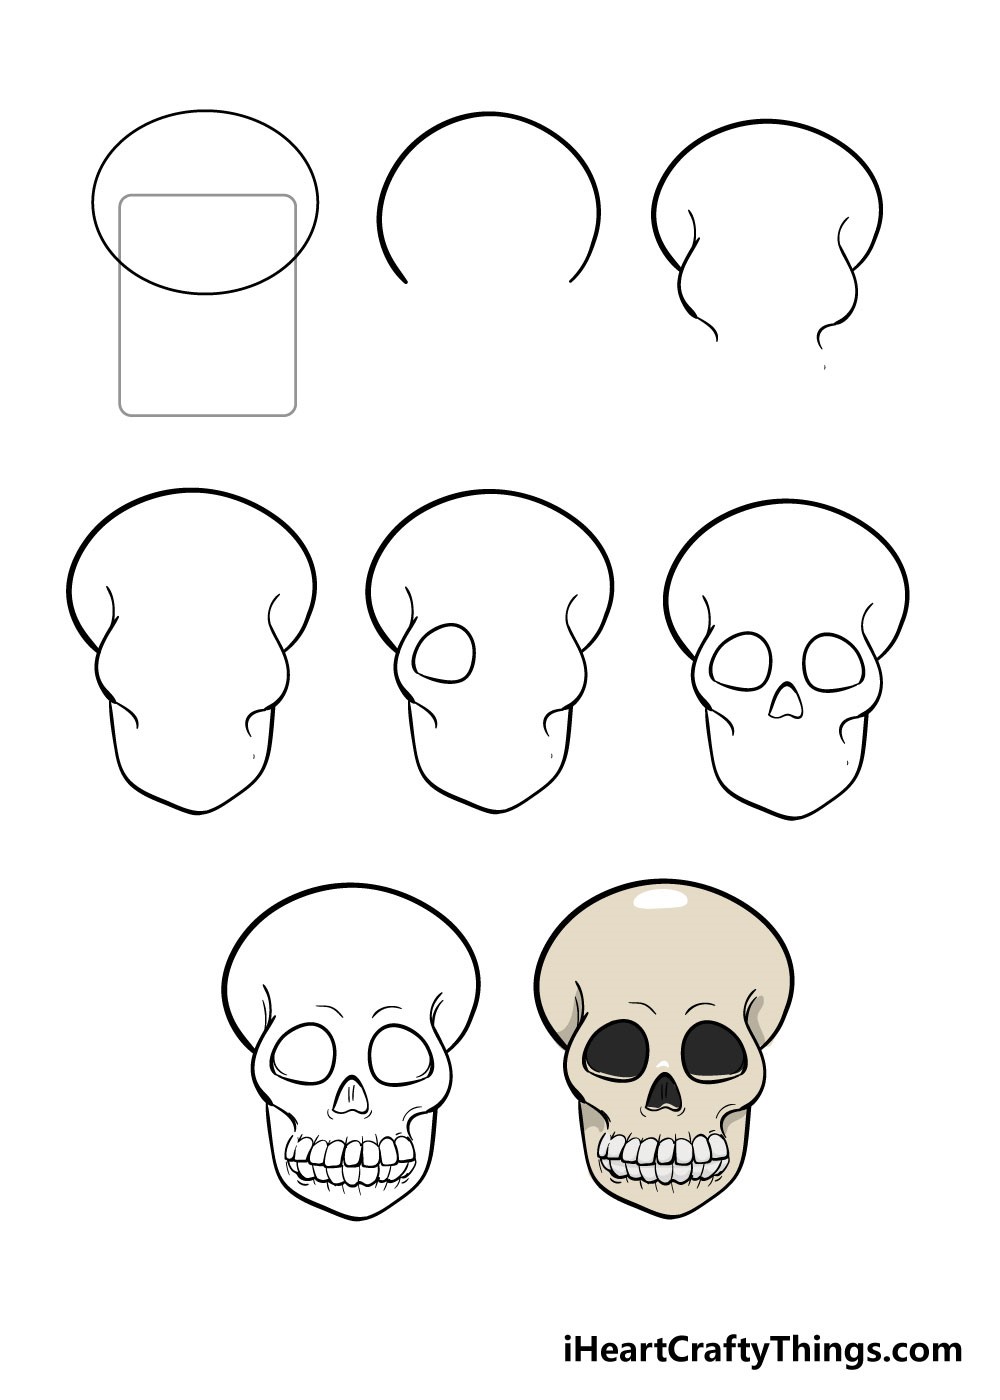 Skull idea 3 Drawing Ideas